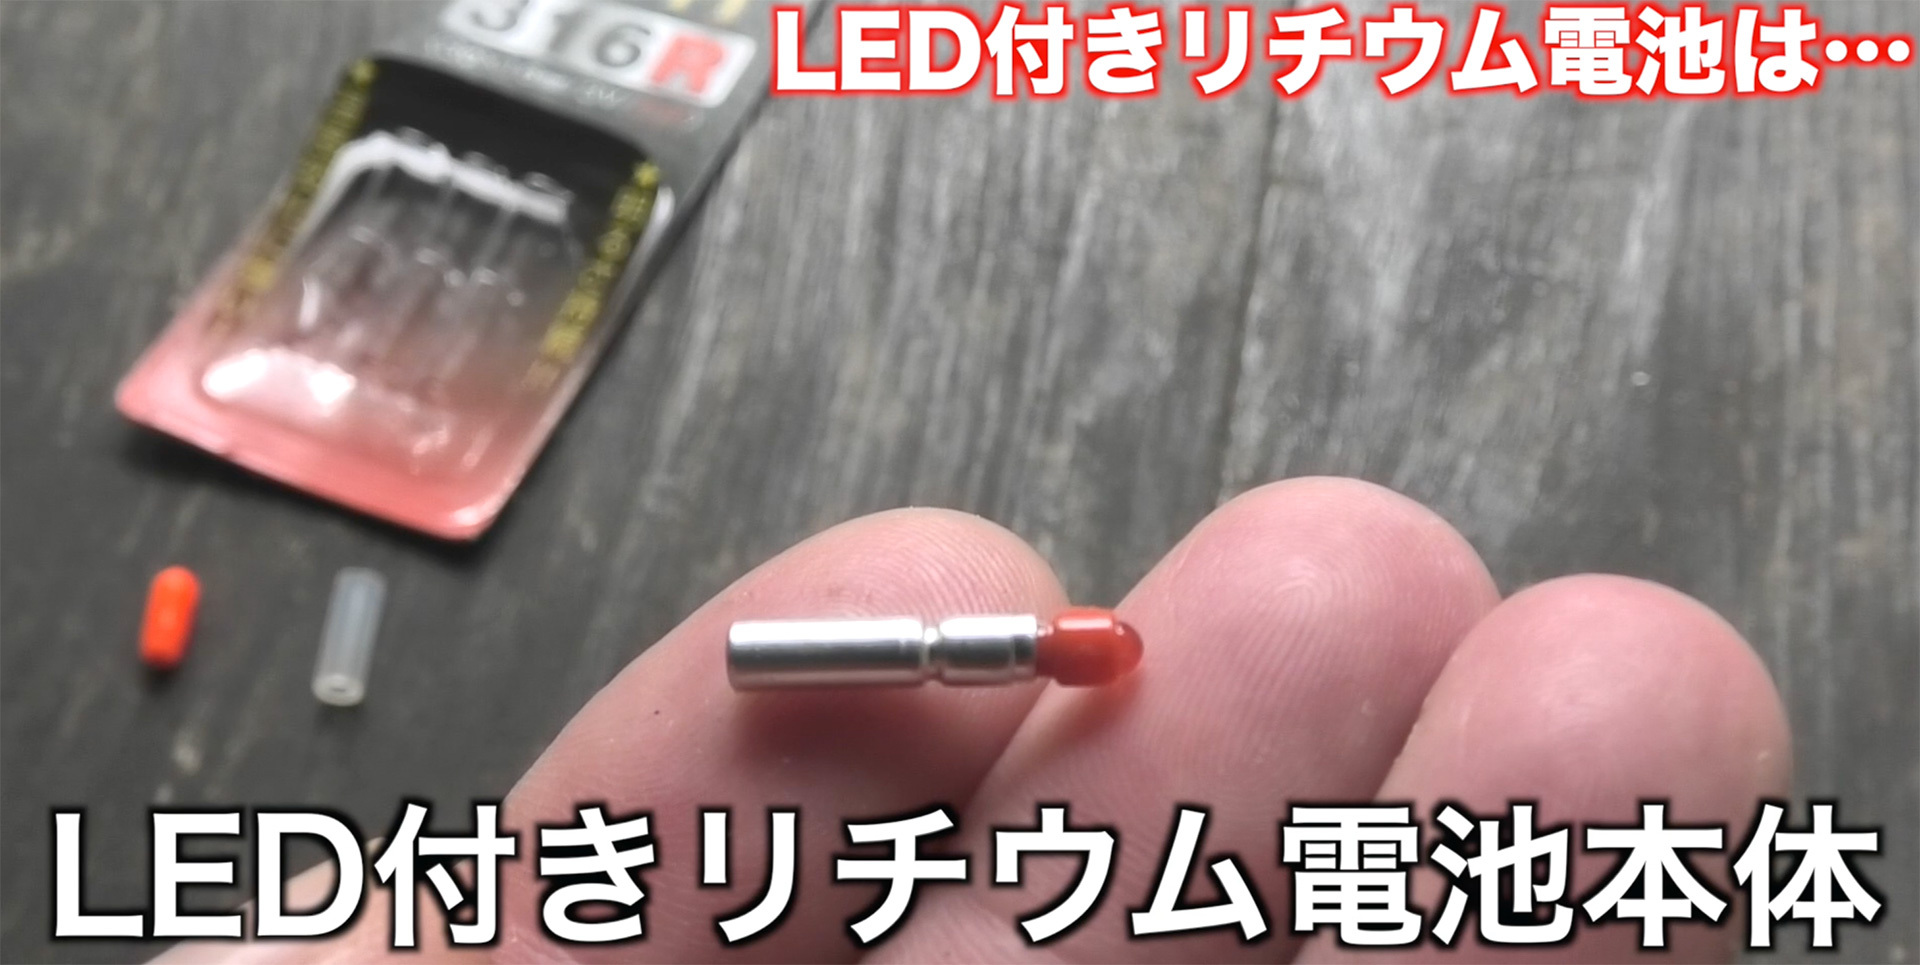 スイッチ機能が付いた超小型LED付きリチウム電池